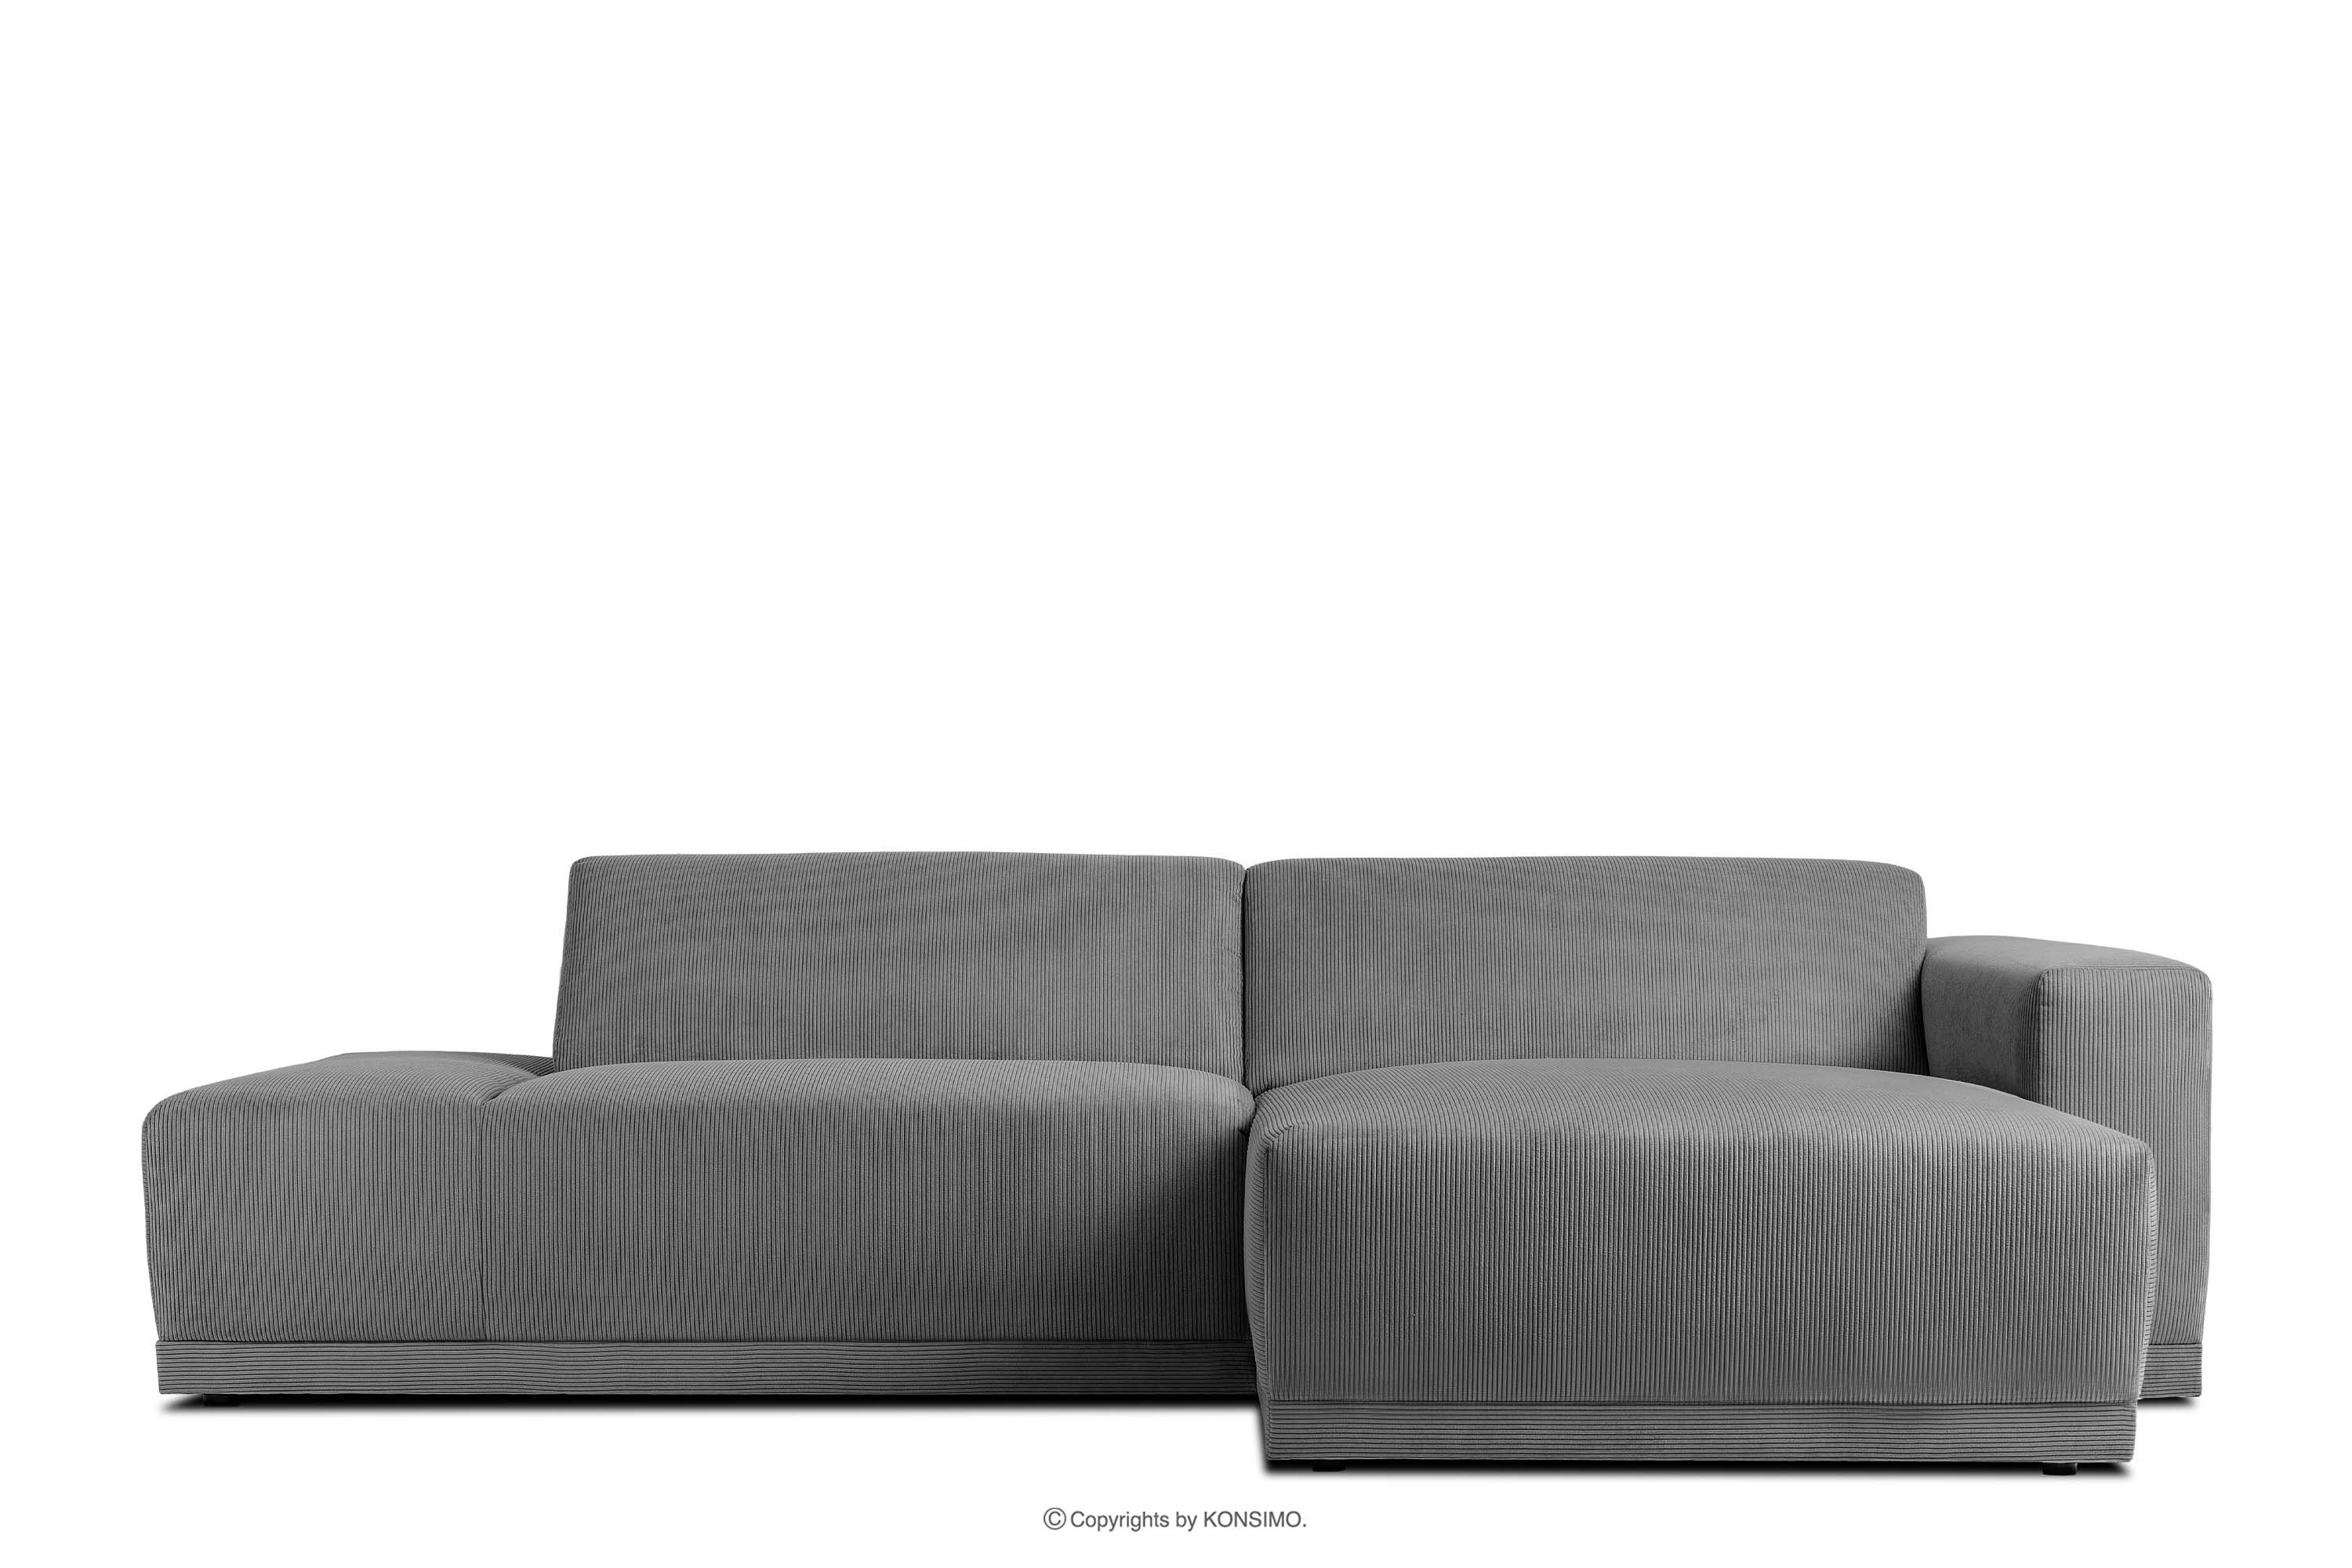 Rohová sedačka do obývacího pokoje v boho stylu šedá vpravo